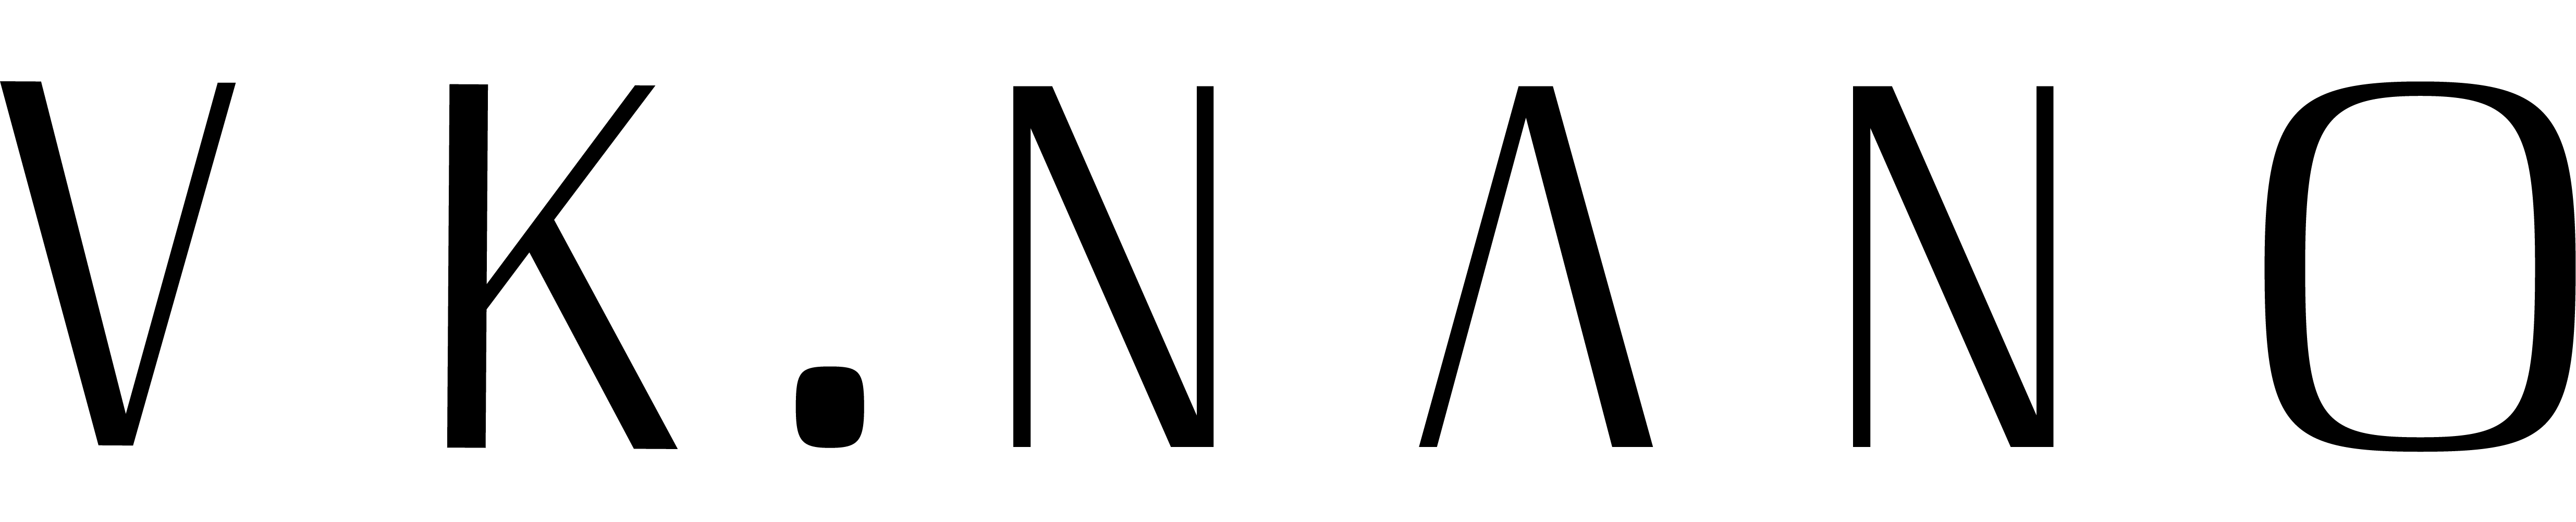 vknano logo